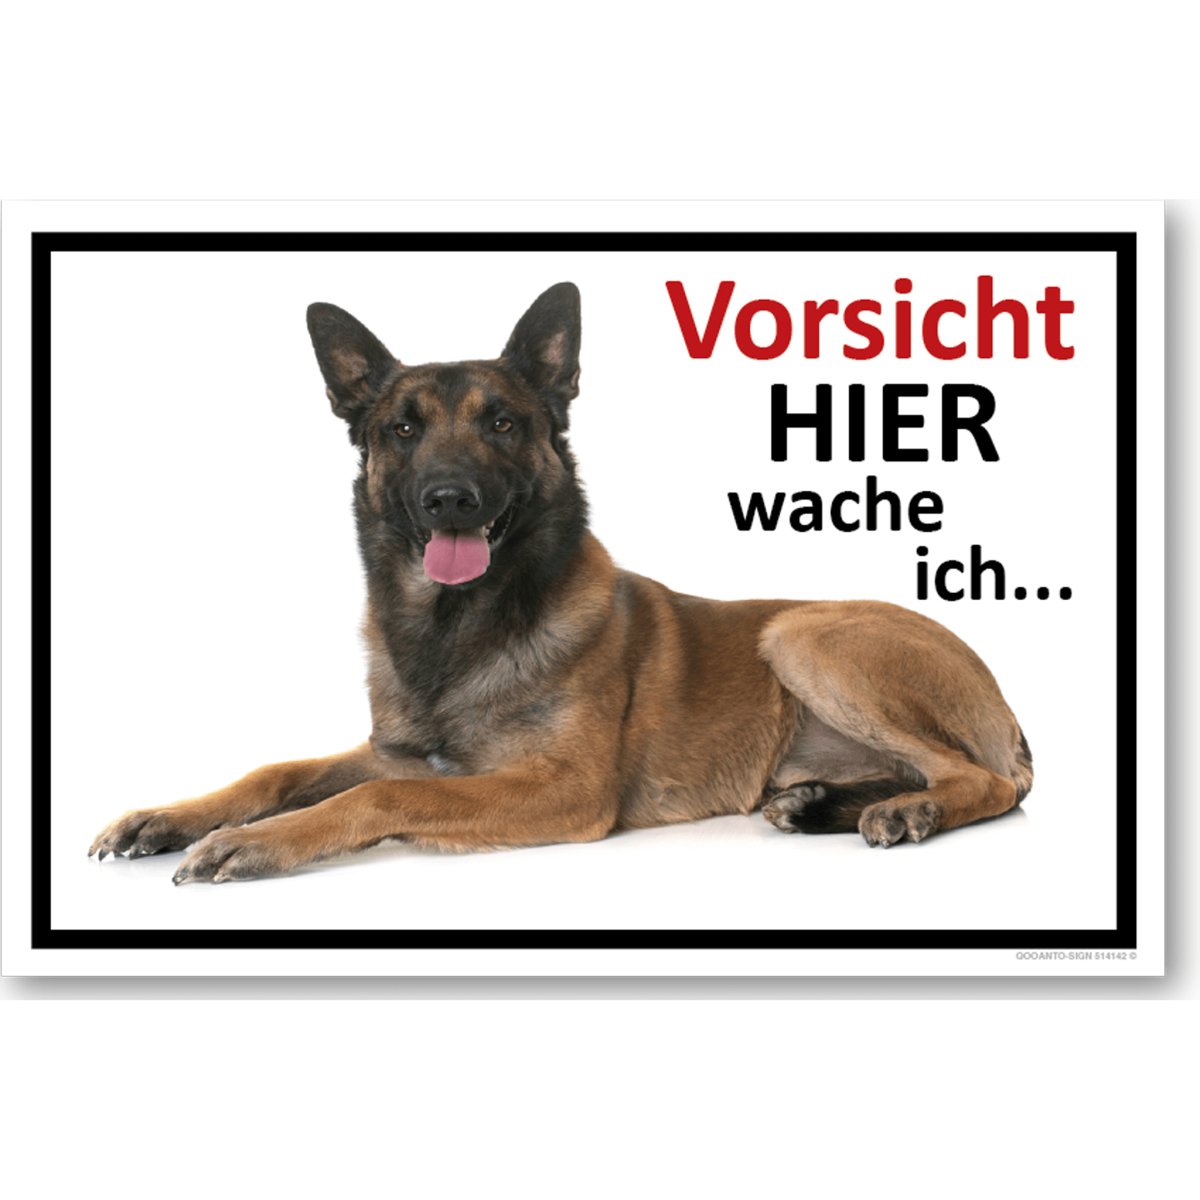 Hundeschild oder Aufkleber, Vorsicht Hier Wache Ich... Belgischer Schäferhund, aus Alu-Verbund oder Selbstklebefolie mit UV-Schutz - QOOANTO-SIGN